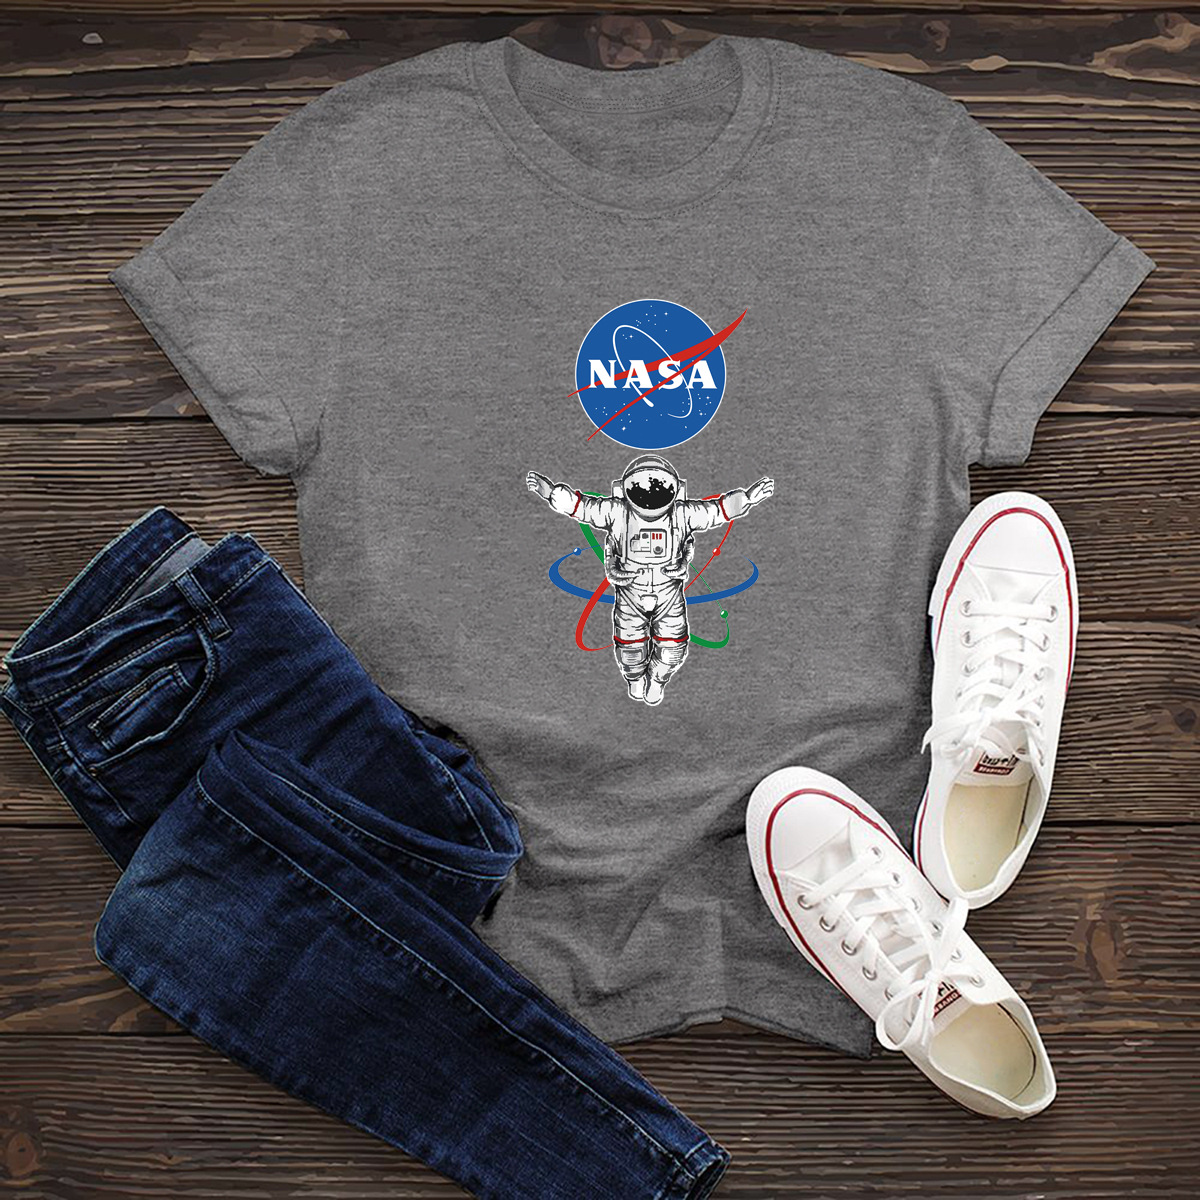 women s comfortable short-sleeved tops women s T-shirt NASA space NSSN1449